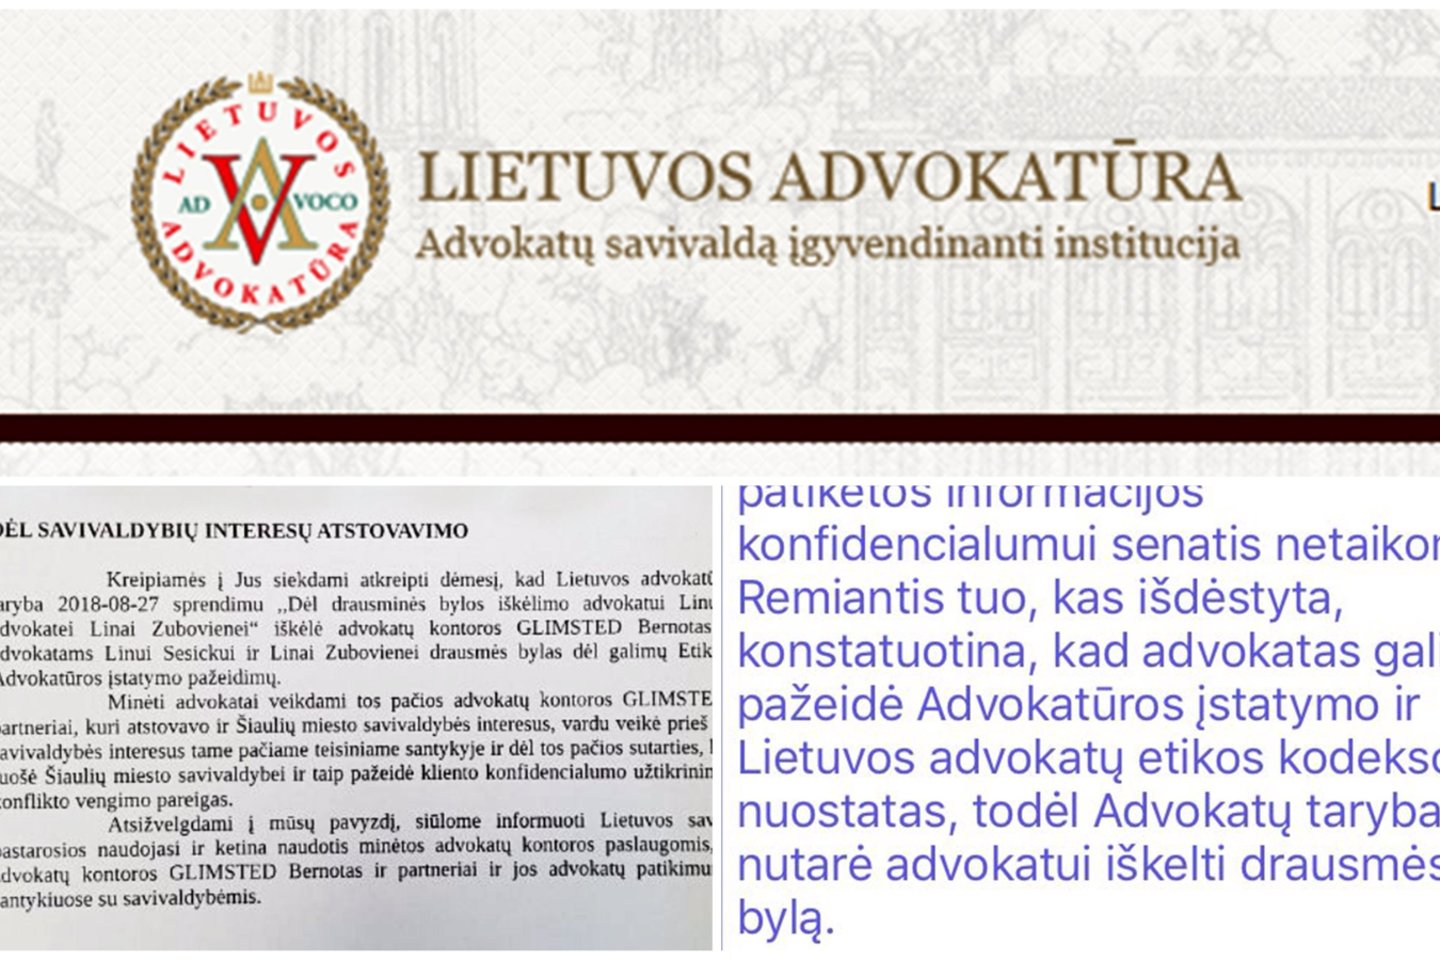  Lietuvos advokatūra išsiuntinėjo perspėjimus savo  bendruomenės nariams vengti interesų konflikto.